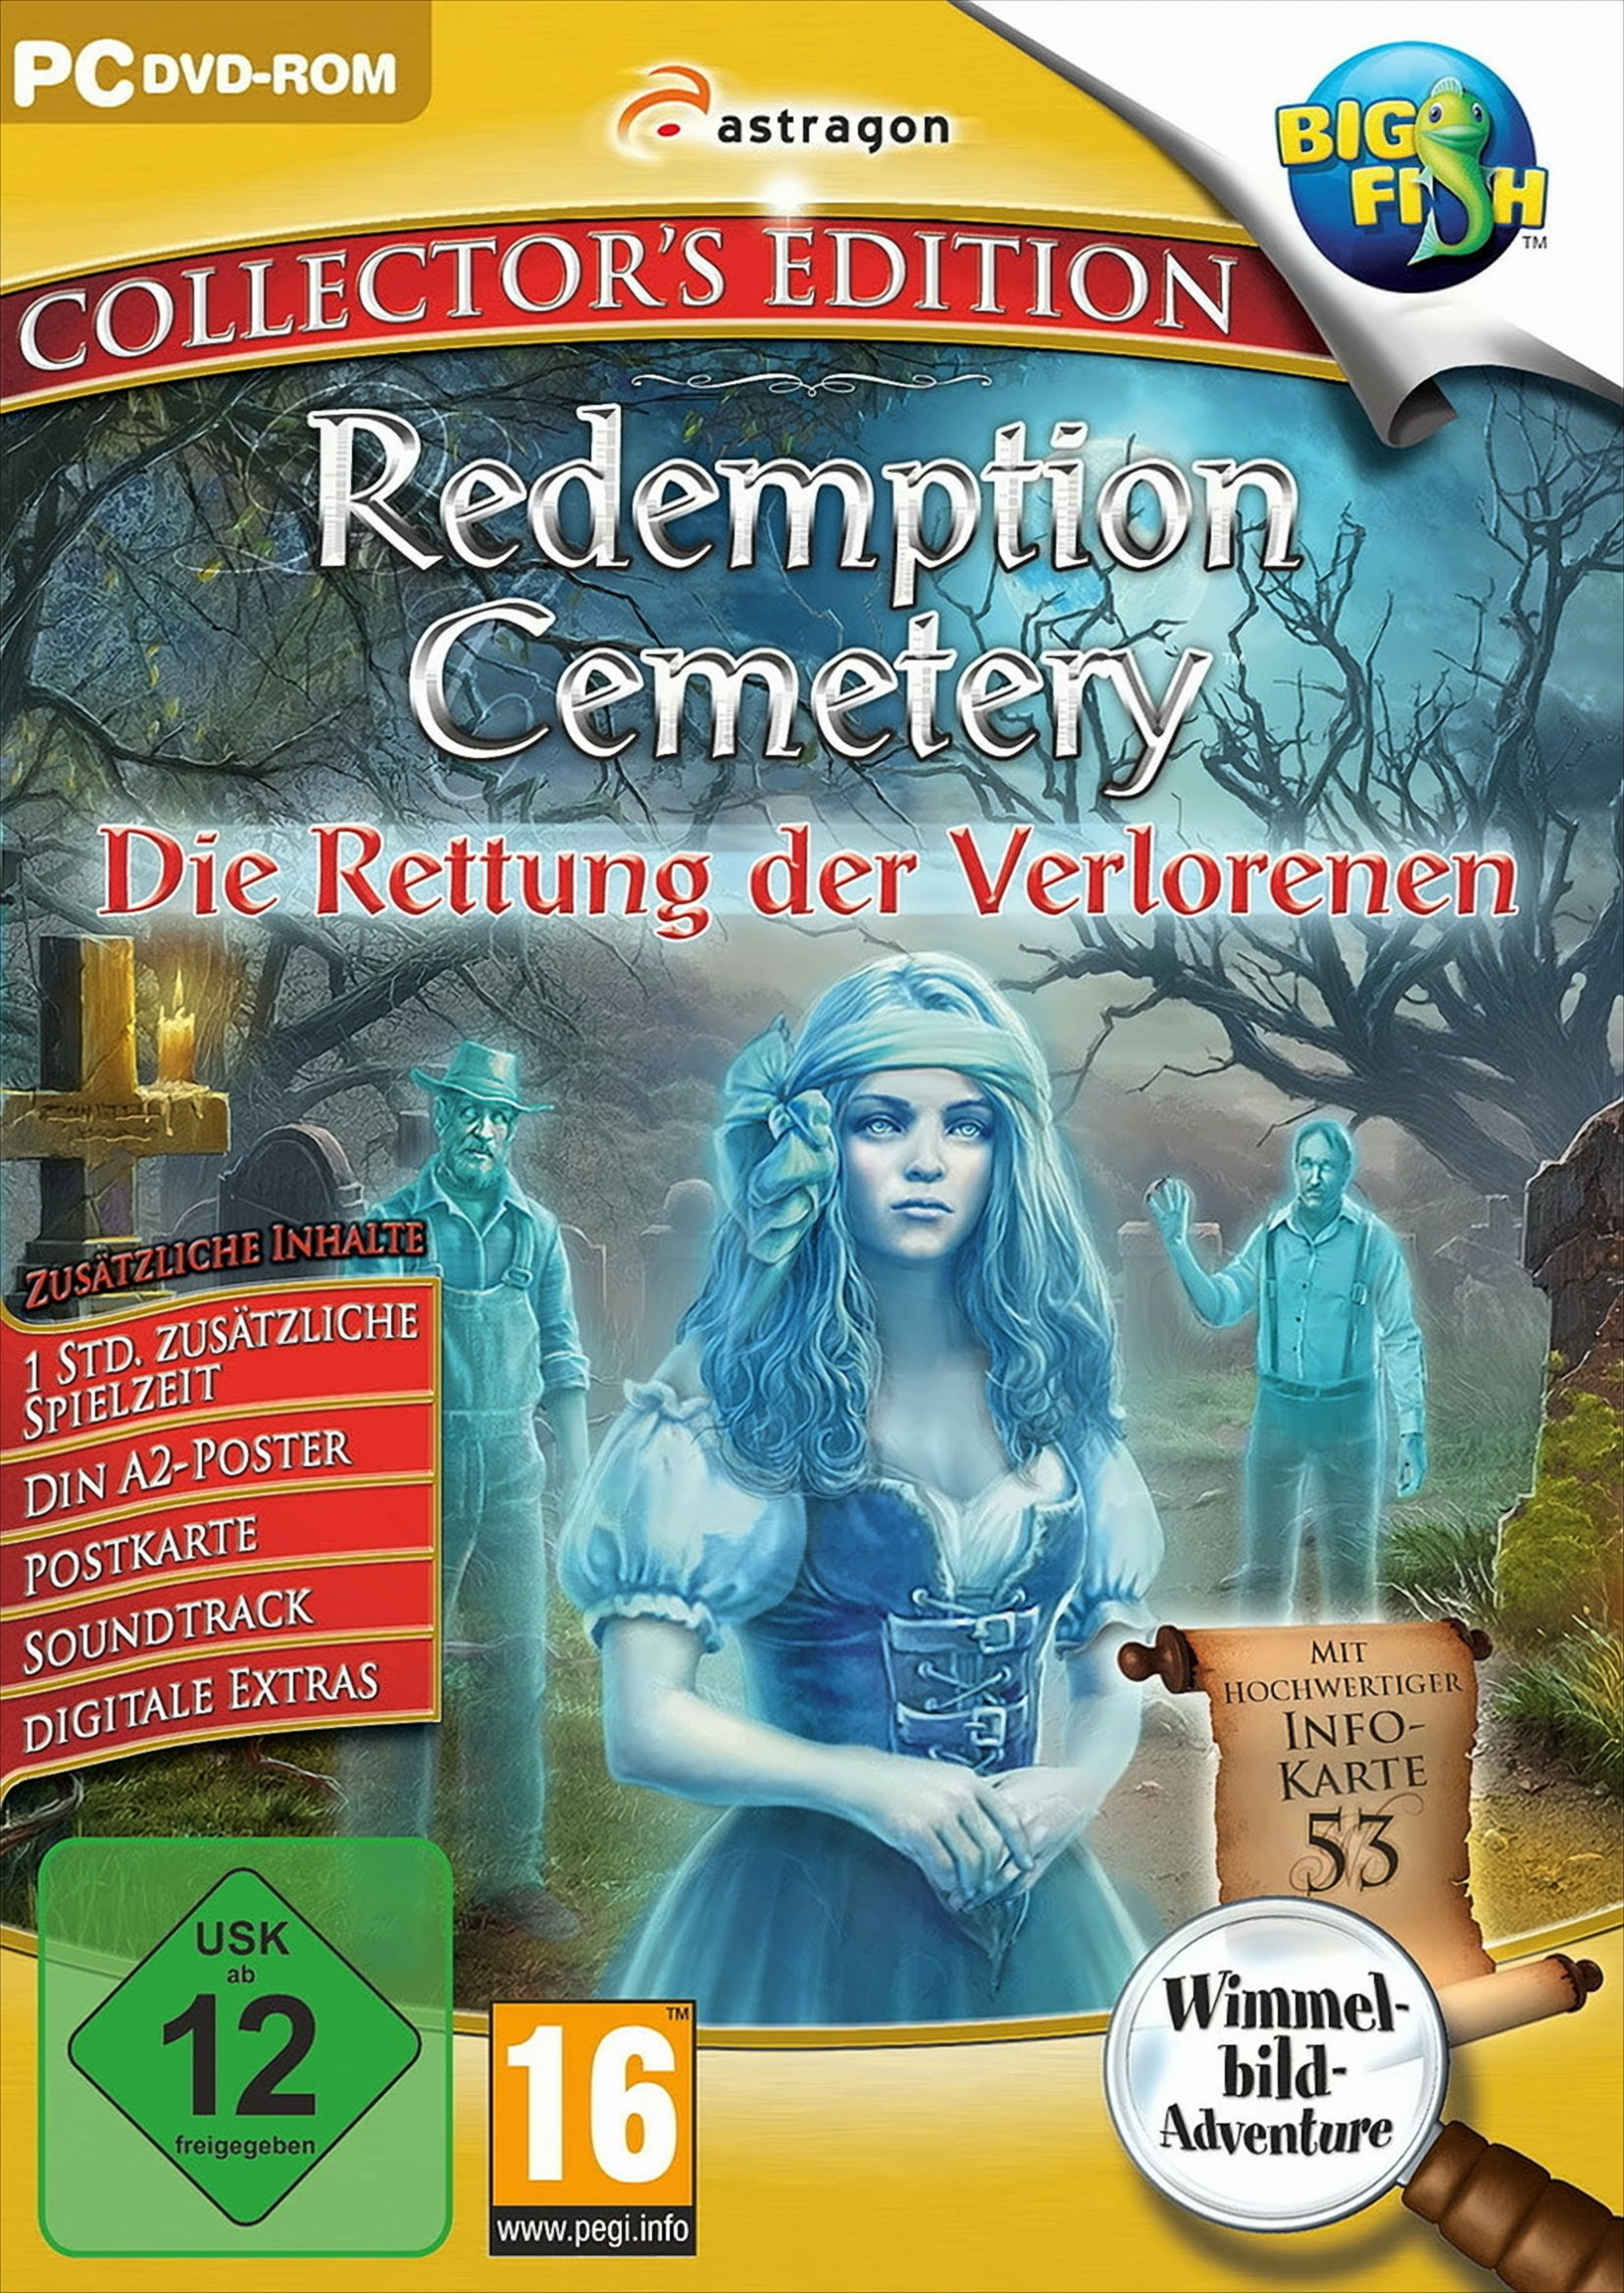 Redemption Cemetery: Die Verlorenen - Rettung [PC] - Edition der Collector\'s